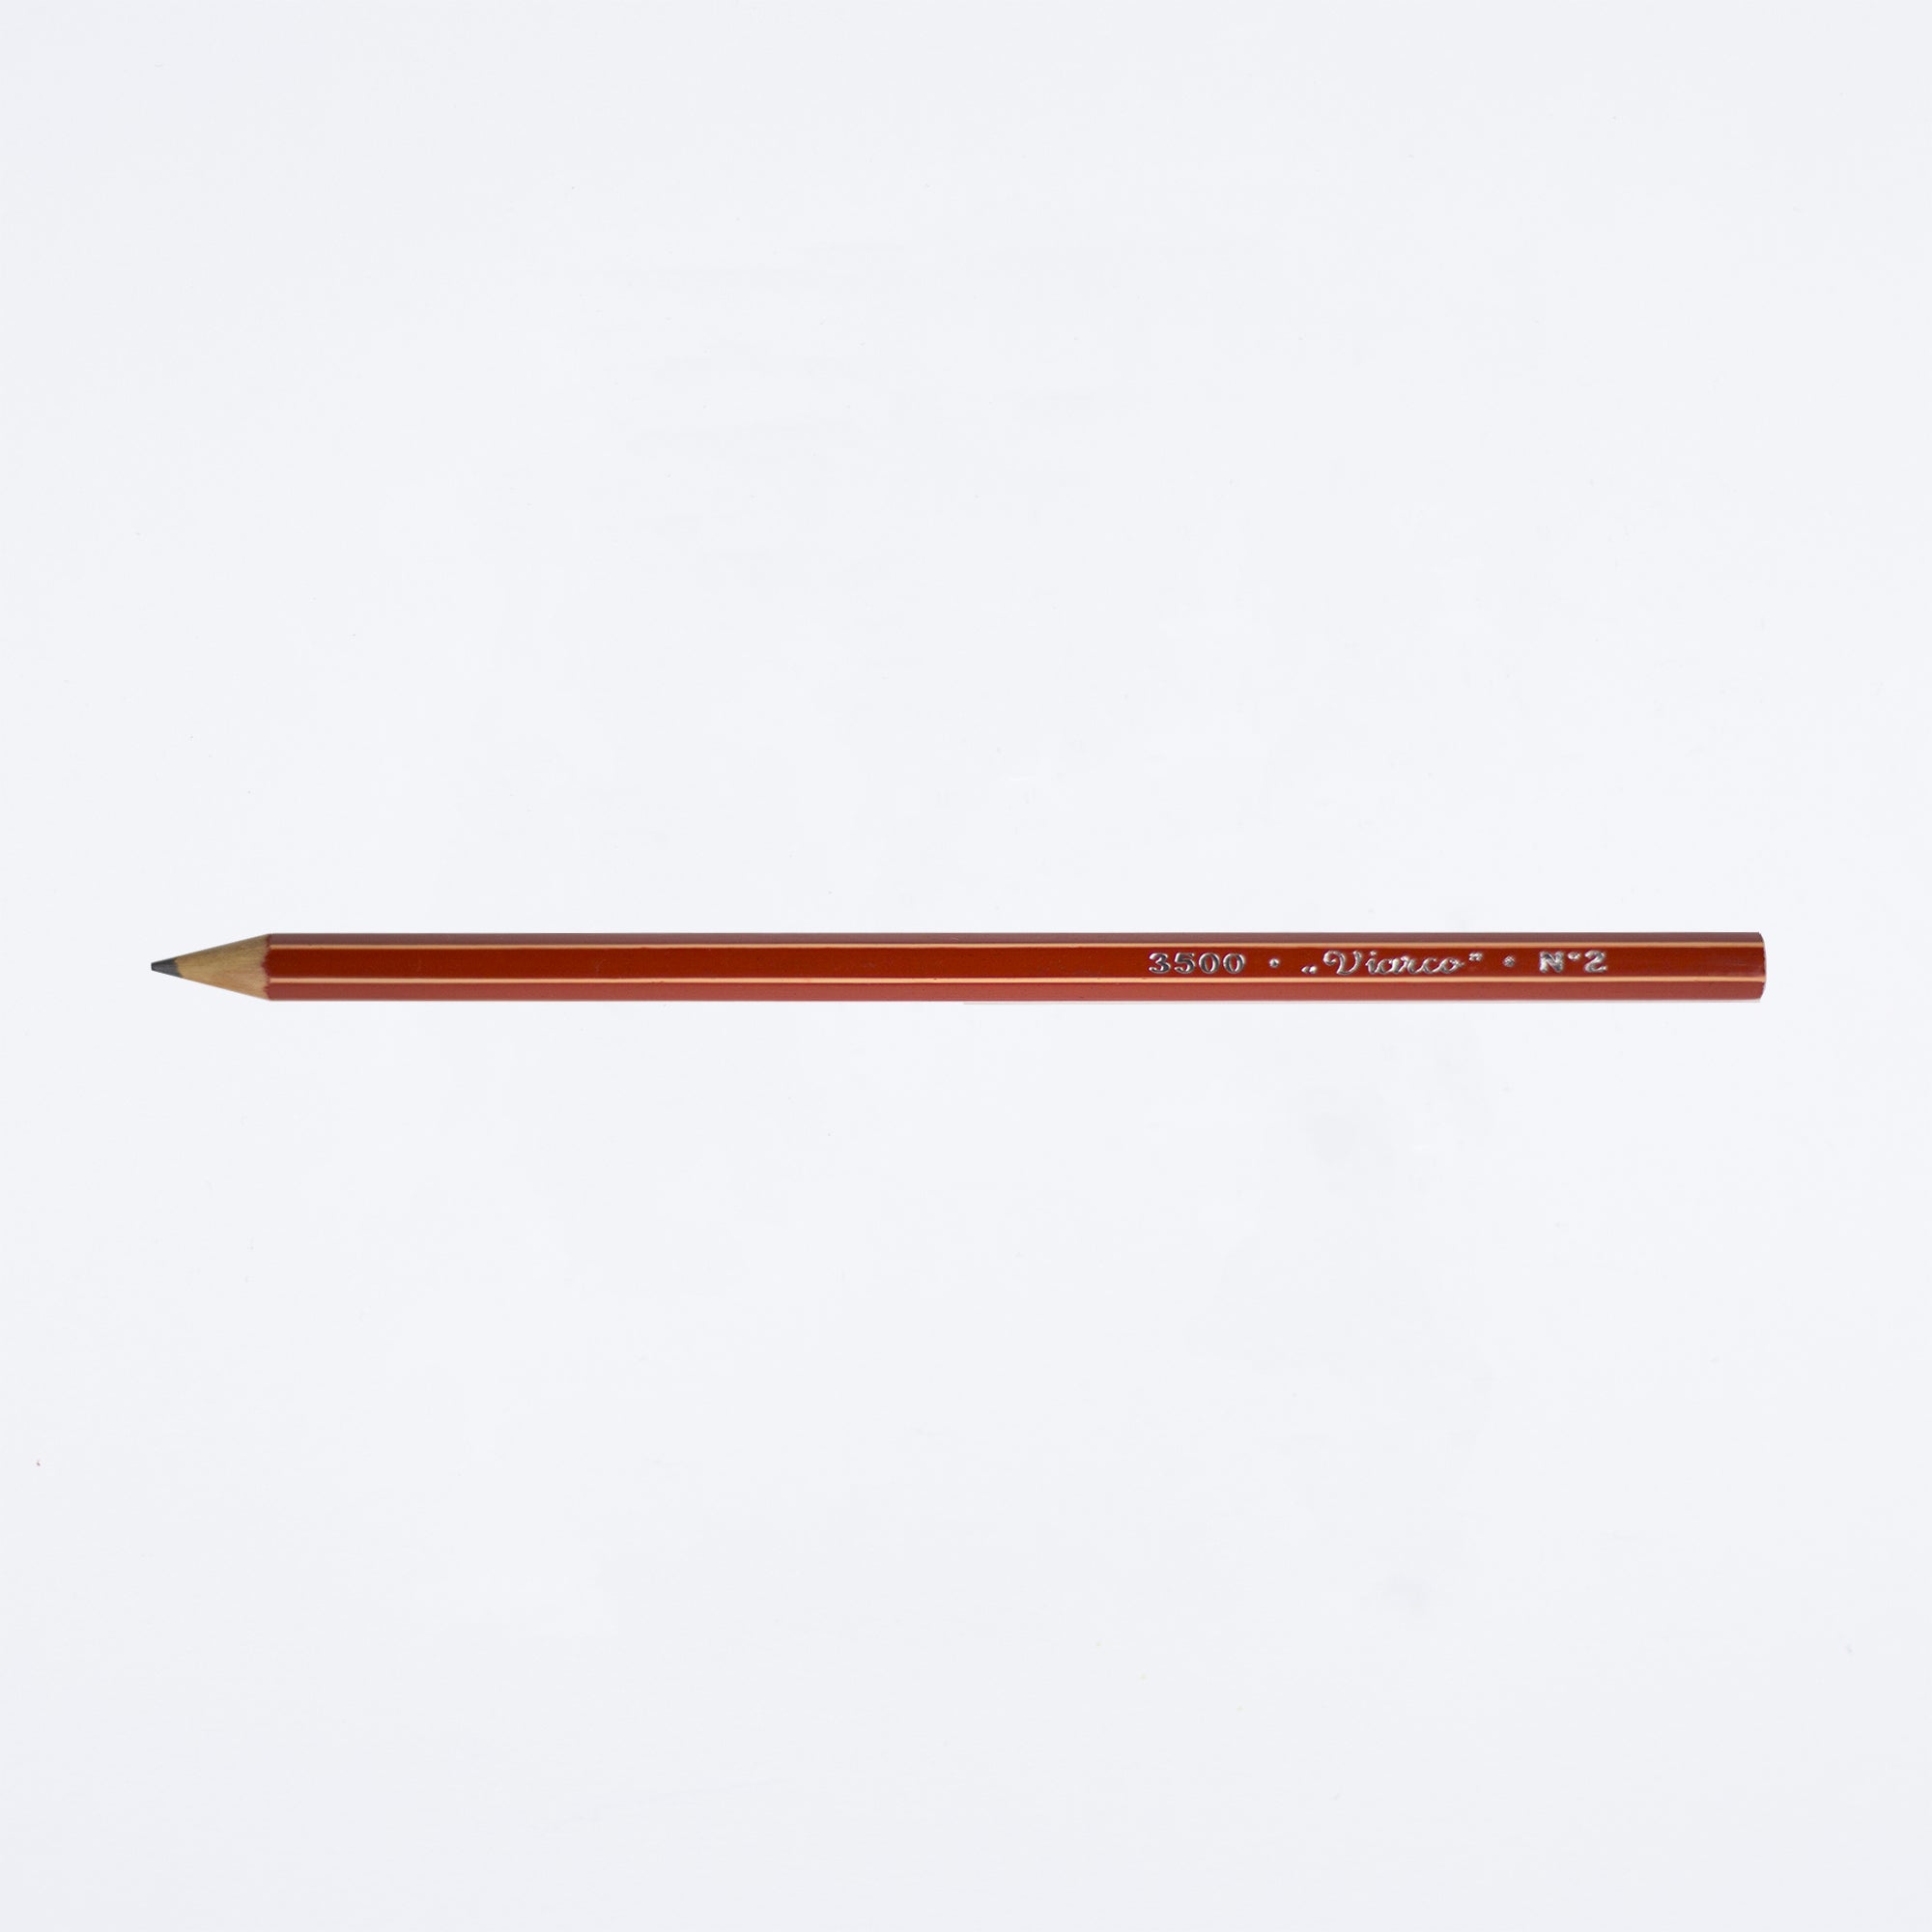 Viarco Vintage 3500 Pencil